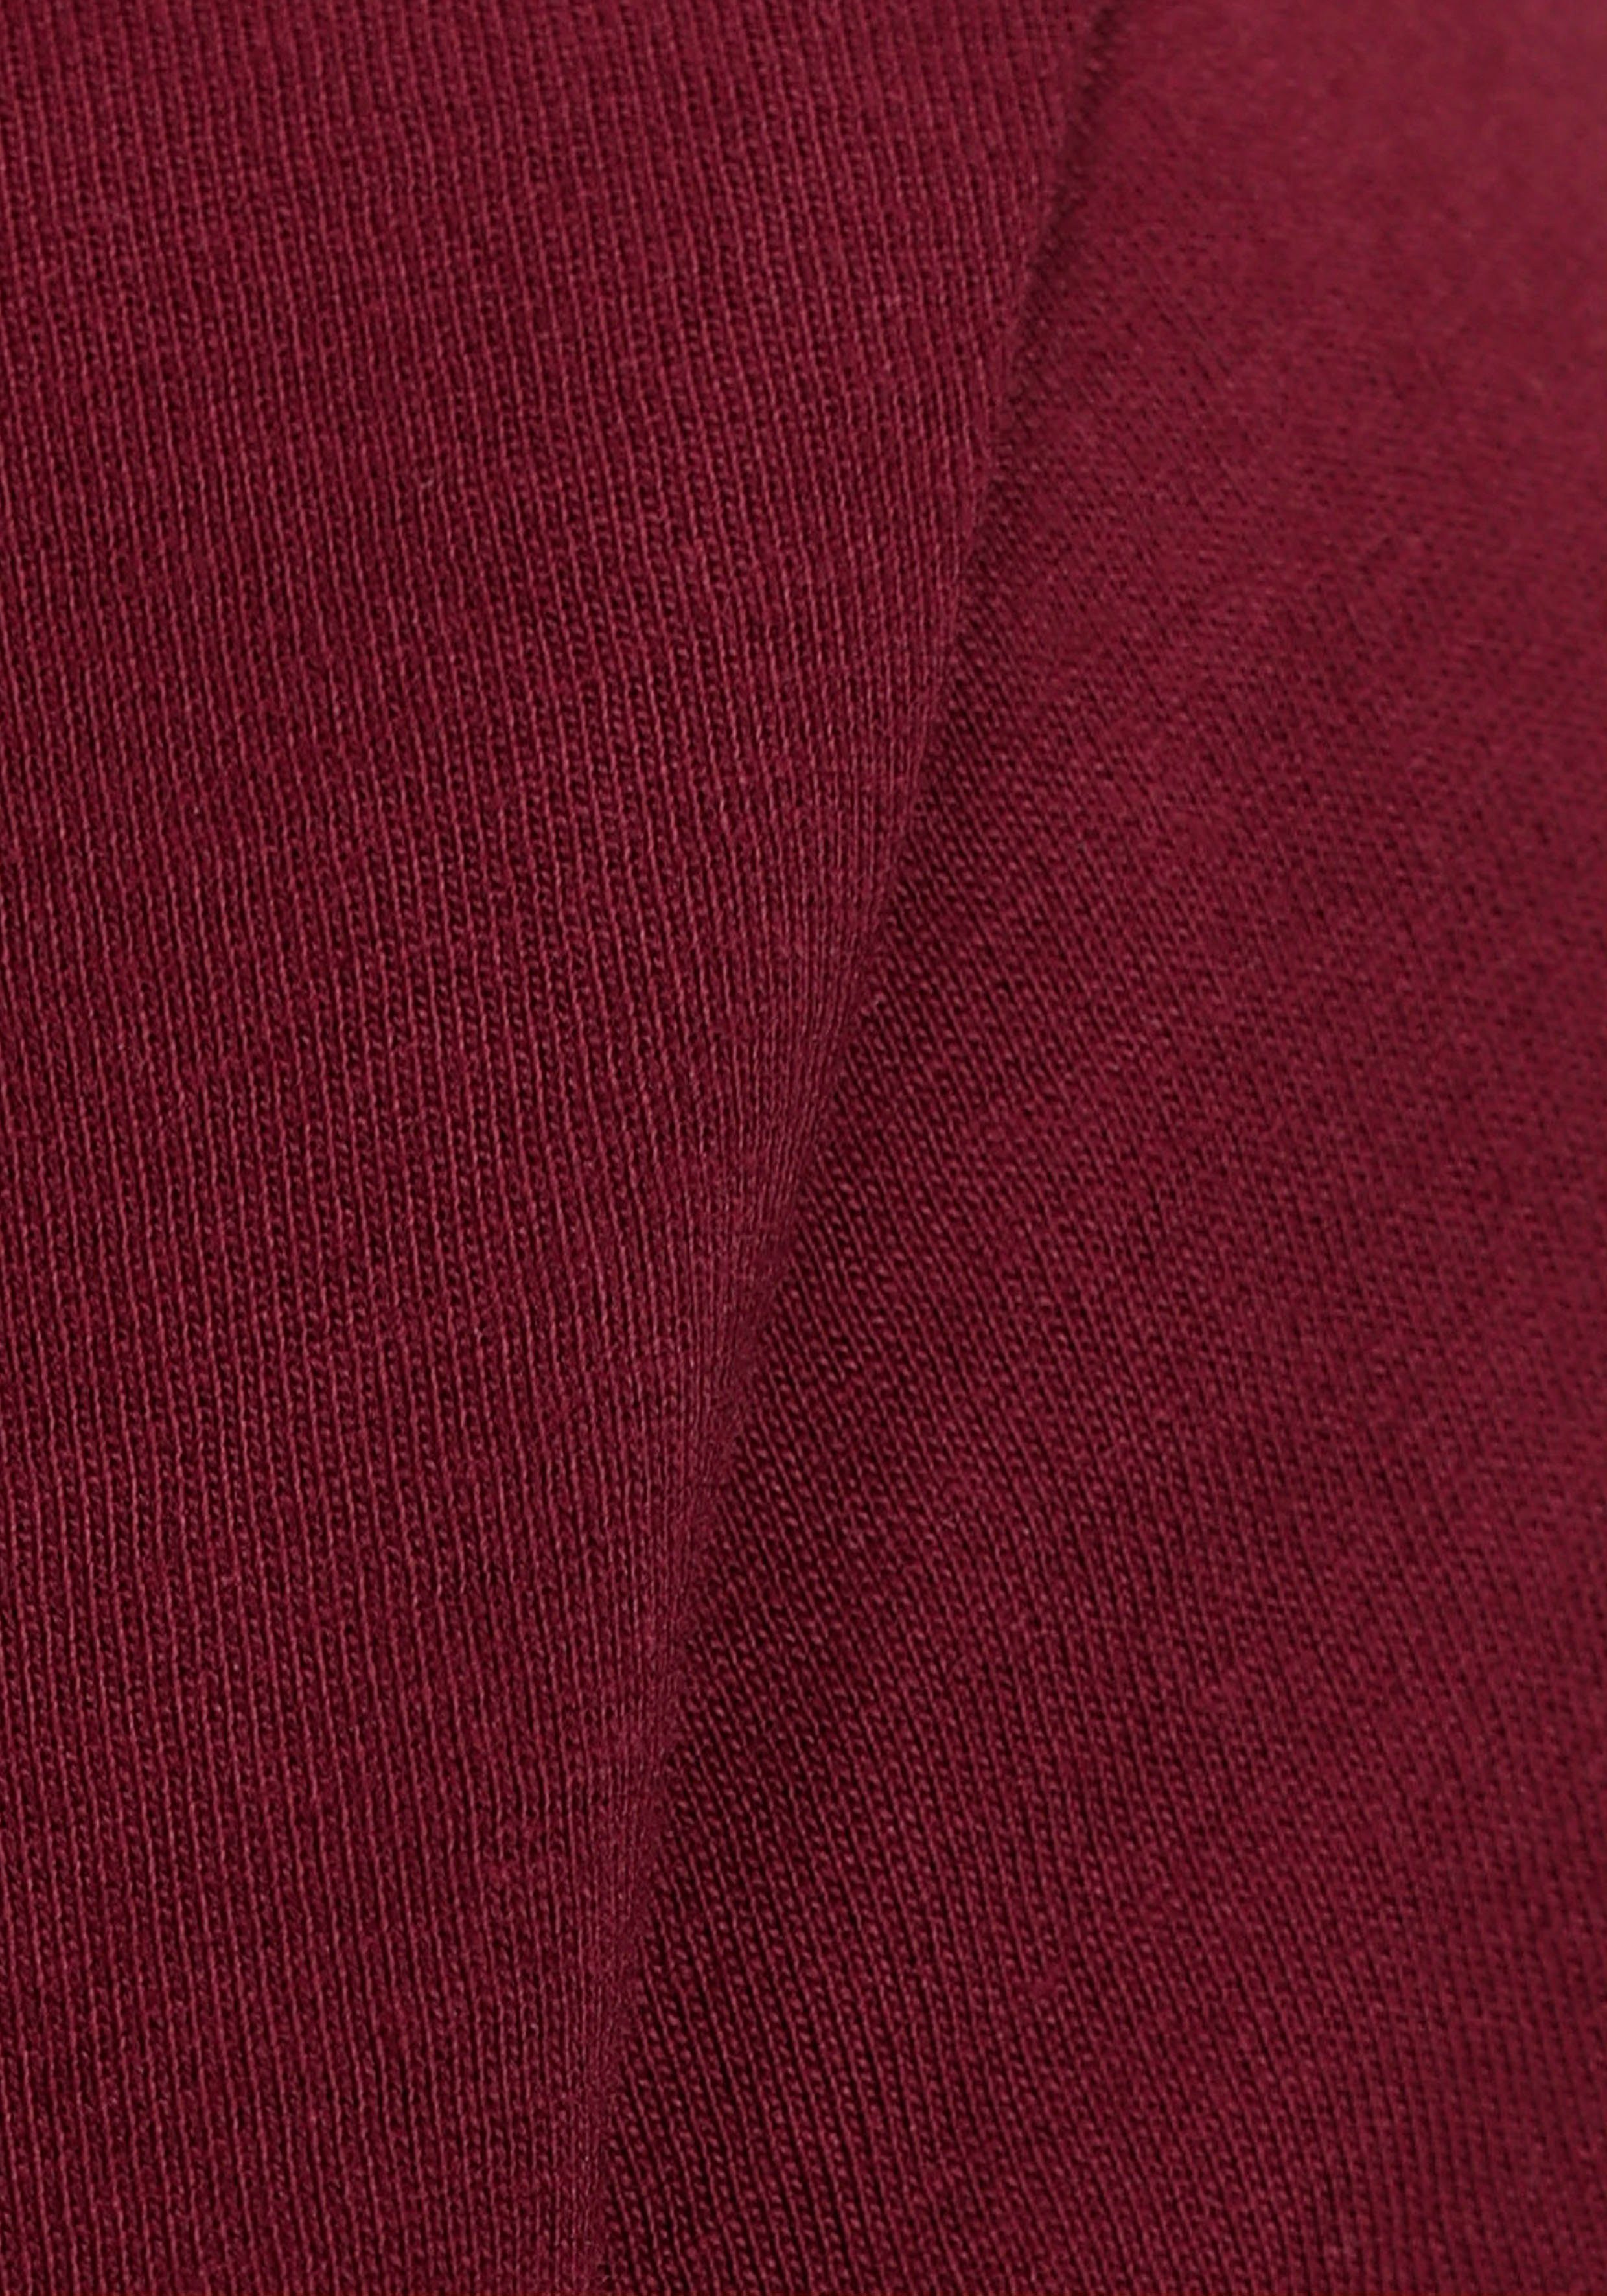 bordeaux, (Set, 3-tlg., T-Shirt aus 3er-Pack) Baumwolle schwarz reiner marine, AJC